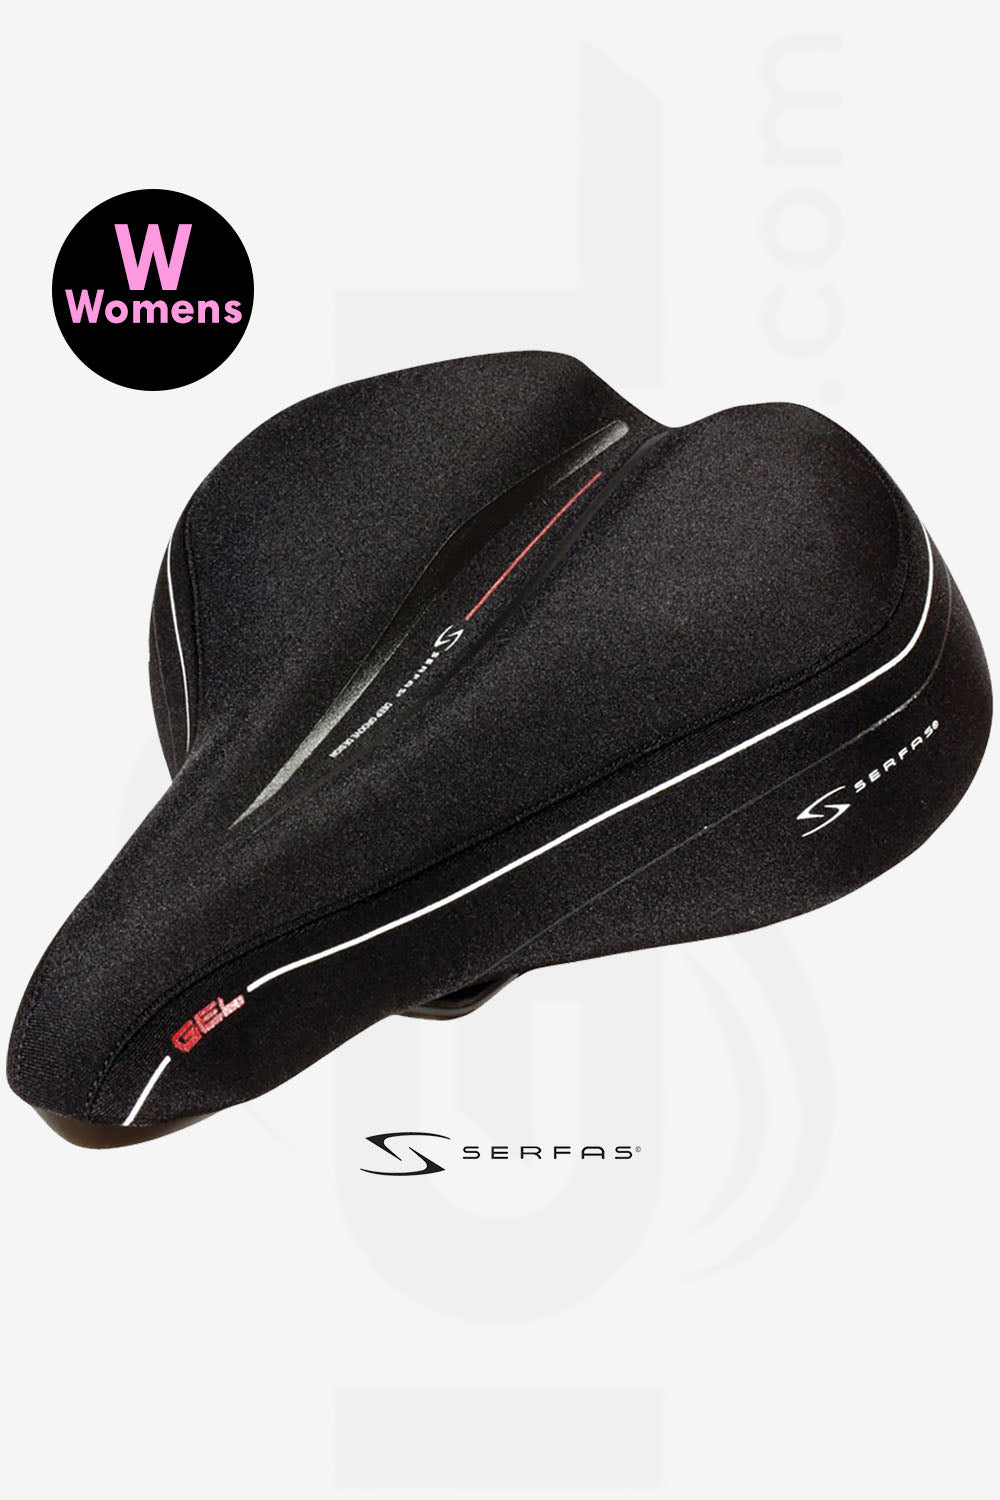 LS-100 Women’s Reactive Gel® Comfort w/ Lycra Cover | Serfas